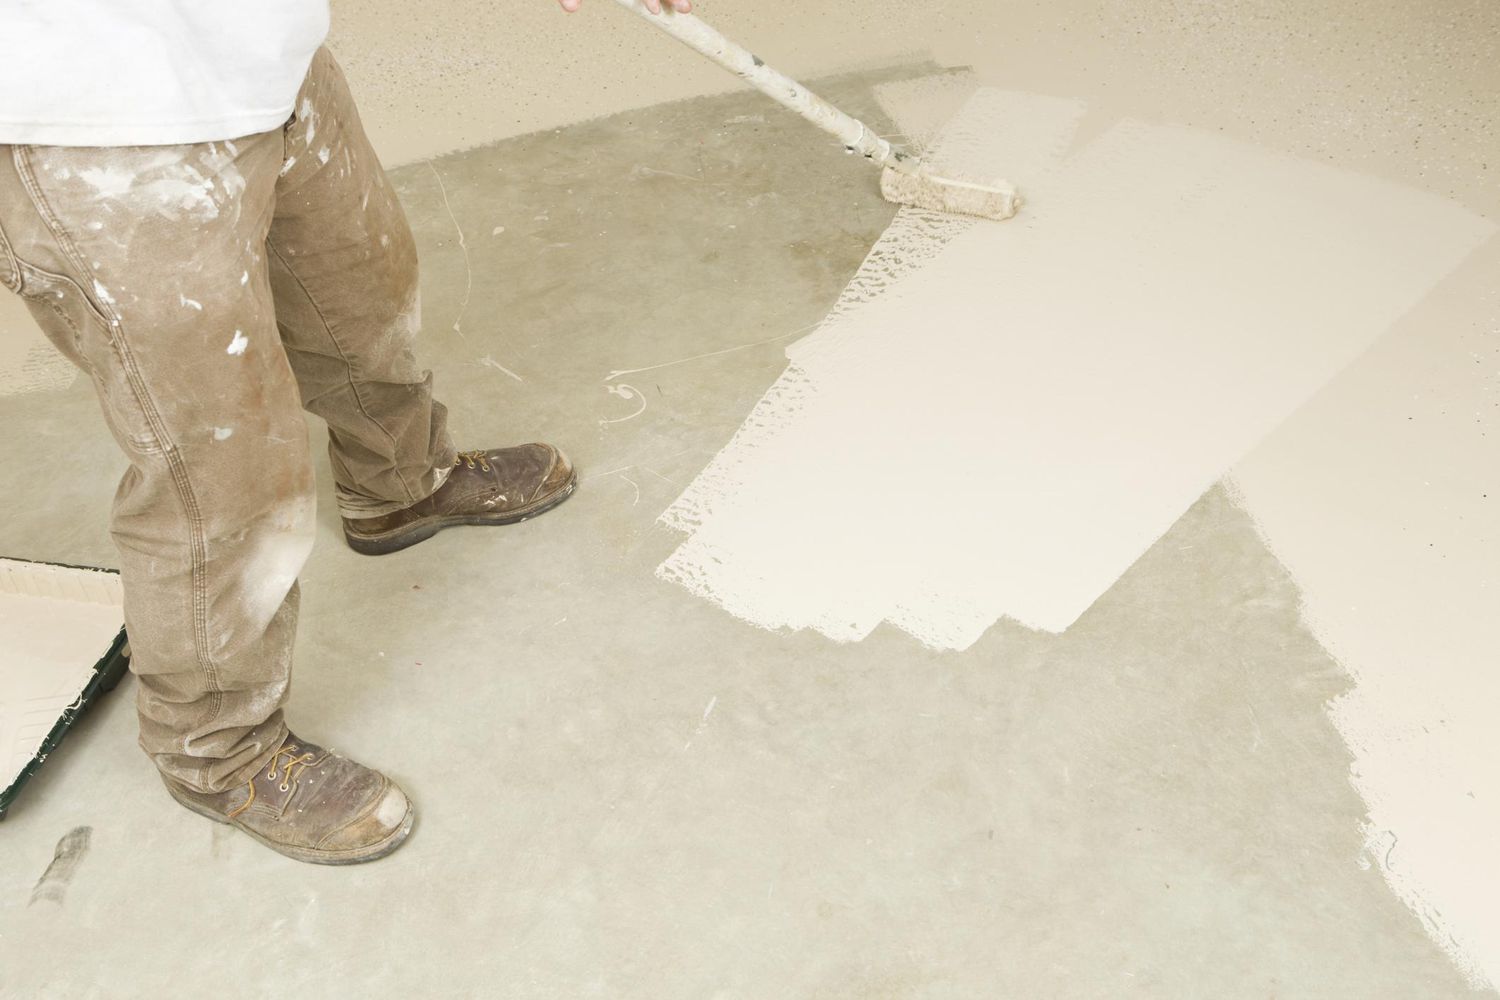 Painter rolling epoxy paint on concrete floor